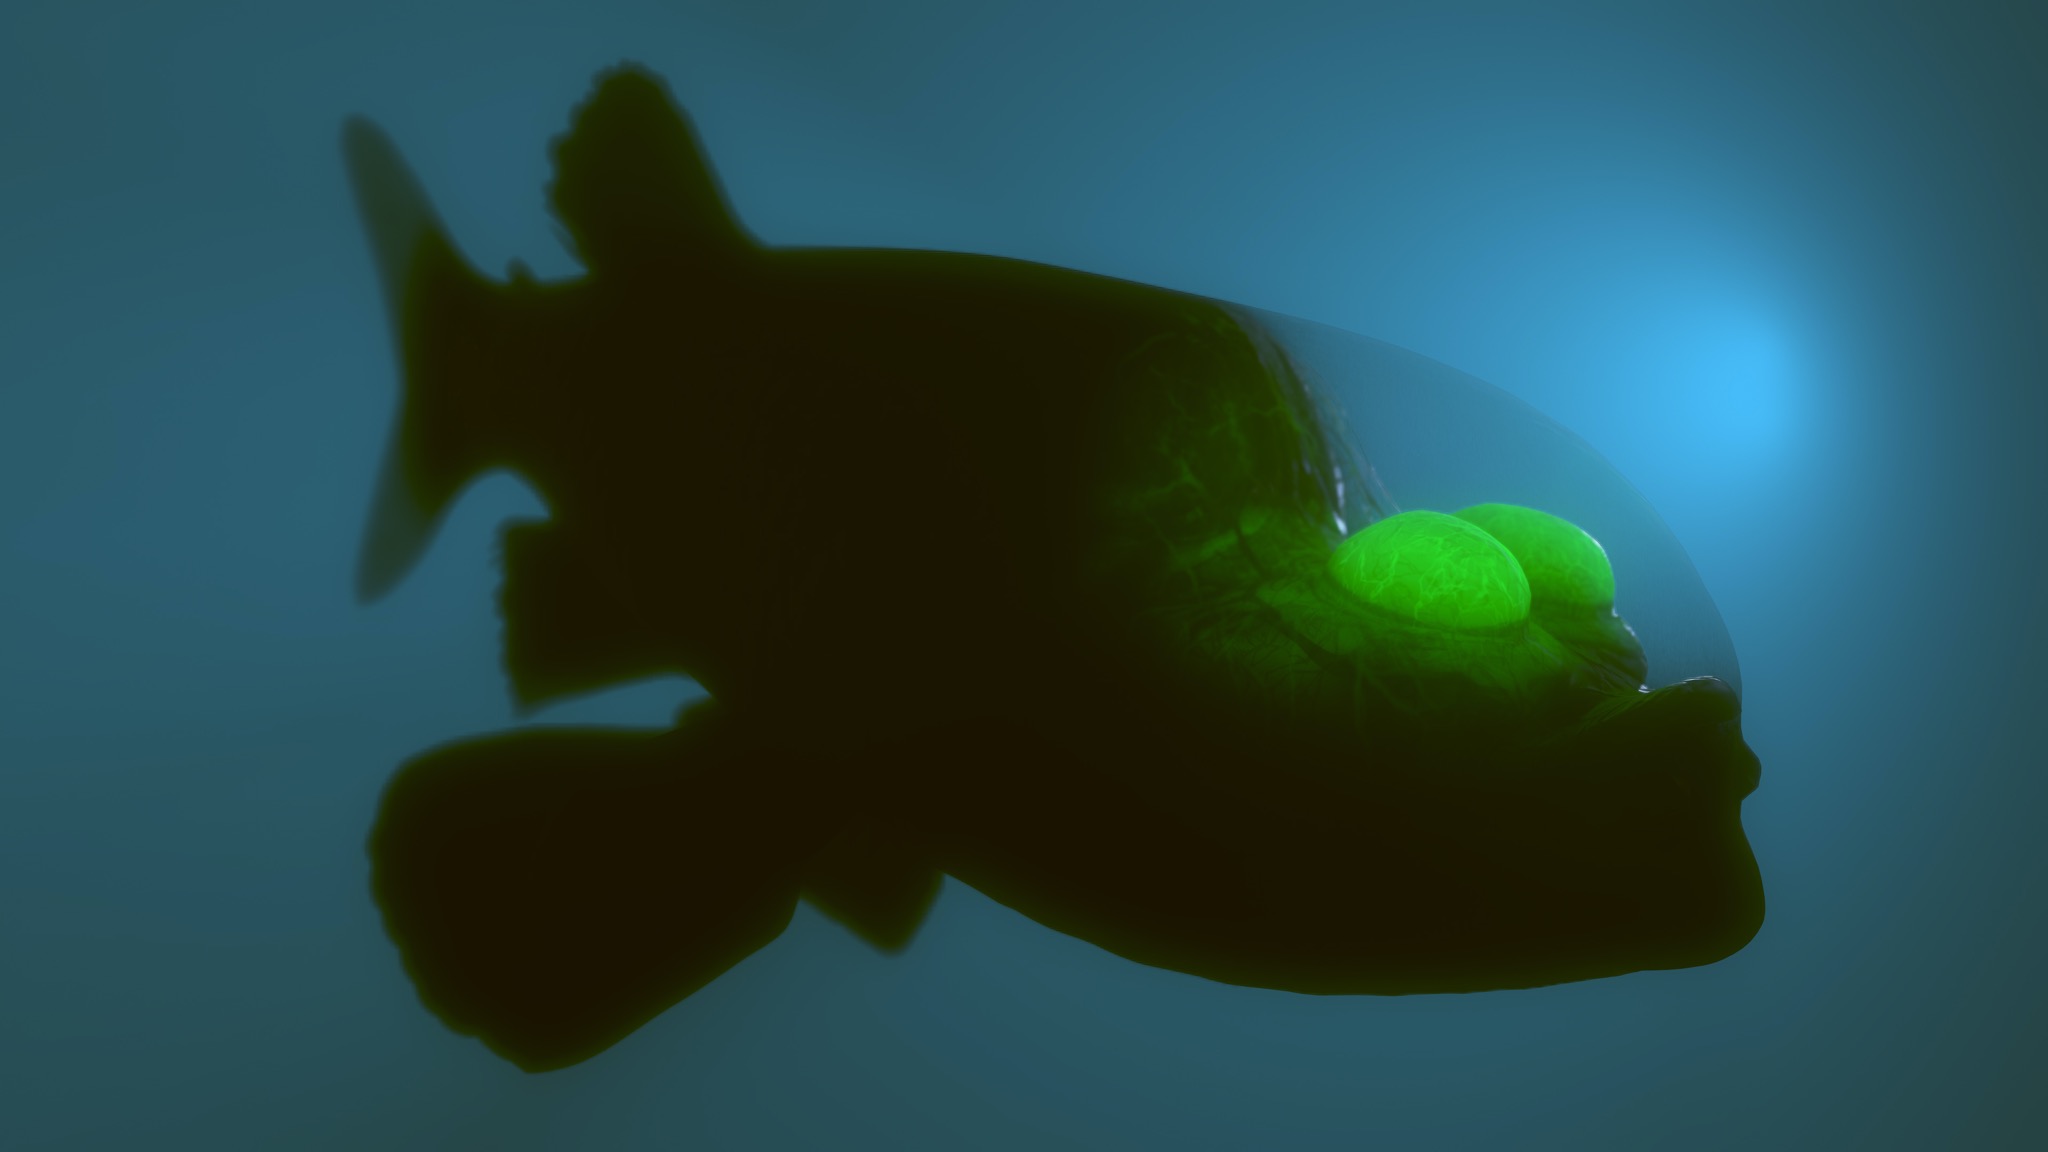 Monterey Bay researchers spot rare, bizarre deep-sea fish